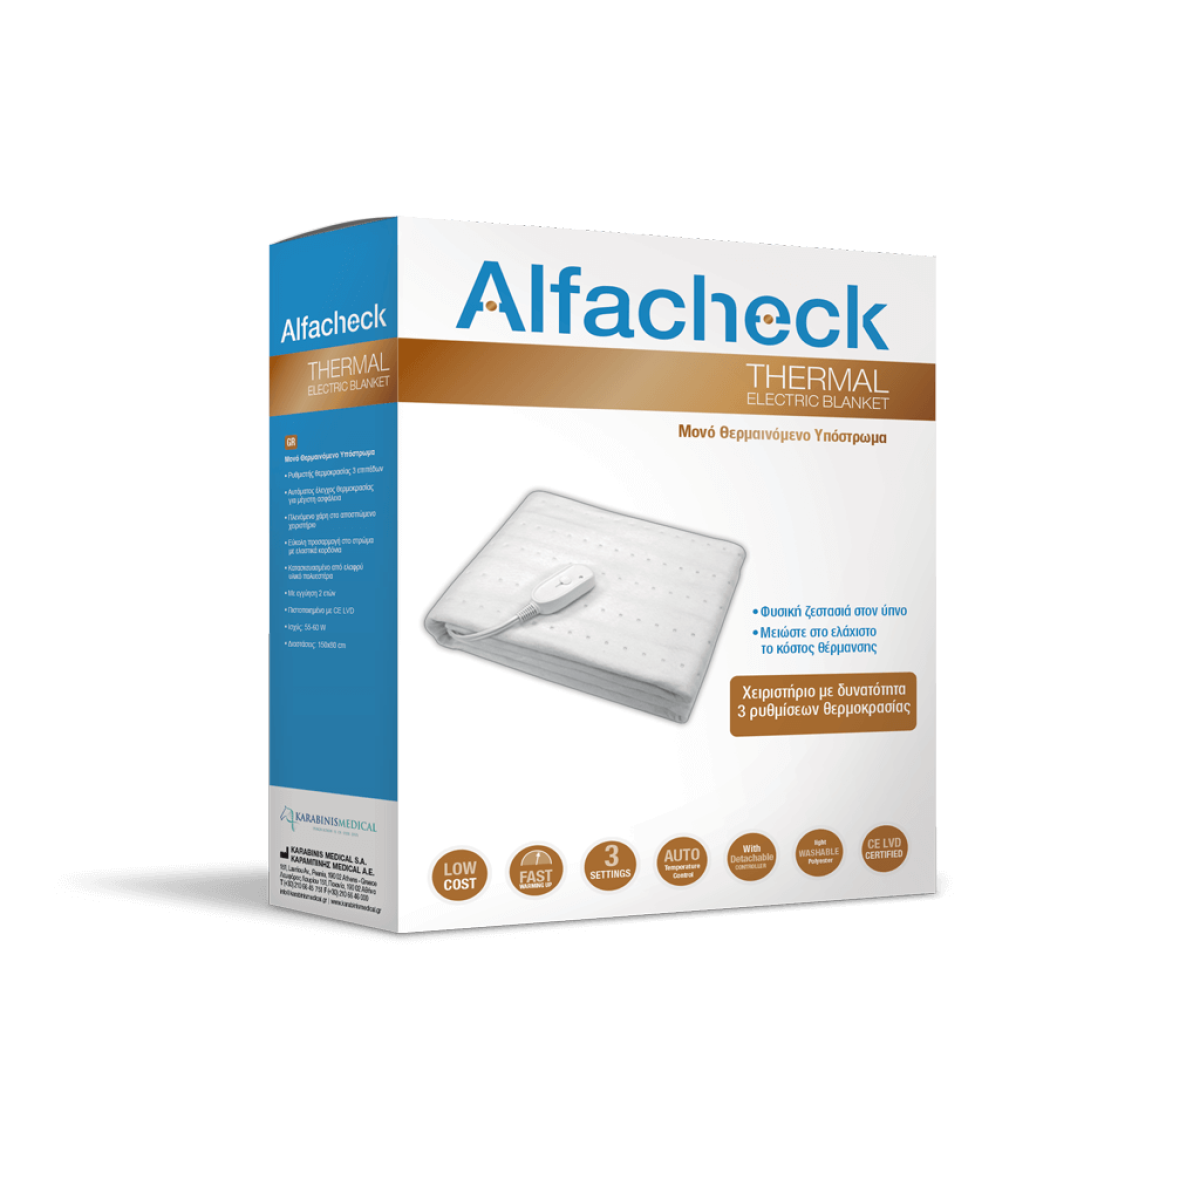 Alfacheck | Thermal Electric Blanket | Μονό Θερμαινόμενο Υπόστρωμα για Ευχάριστο & Άνετο Ύπνο 150x80cm | 1 Τεμάχιο